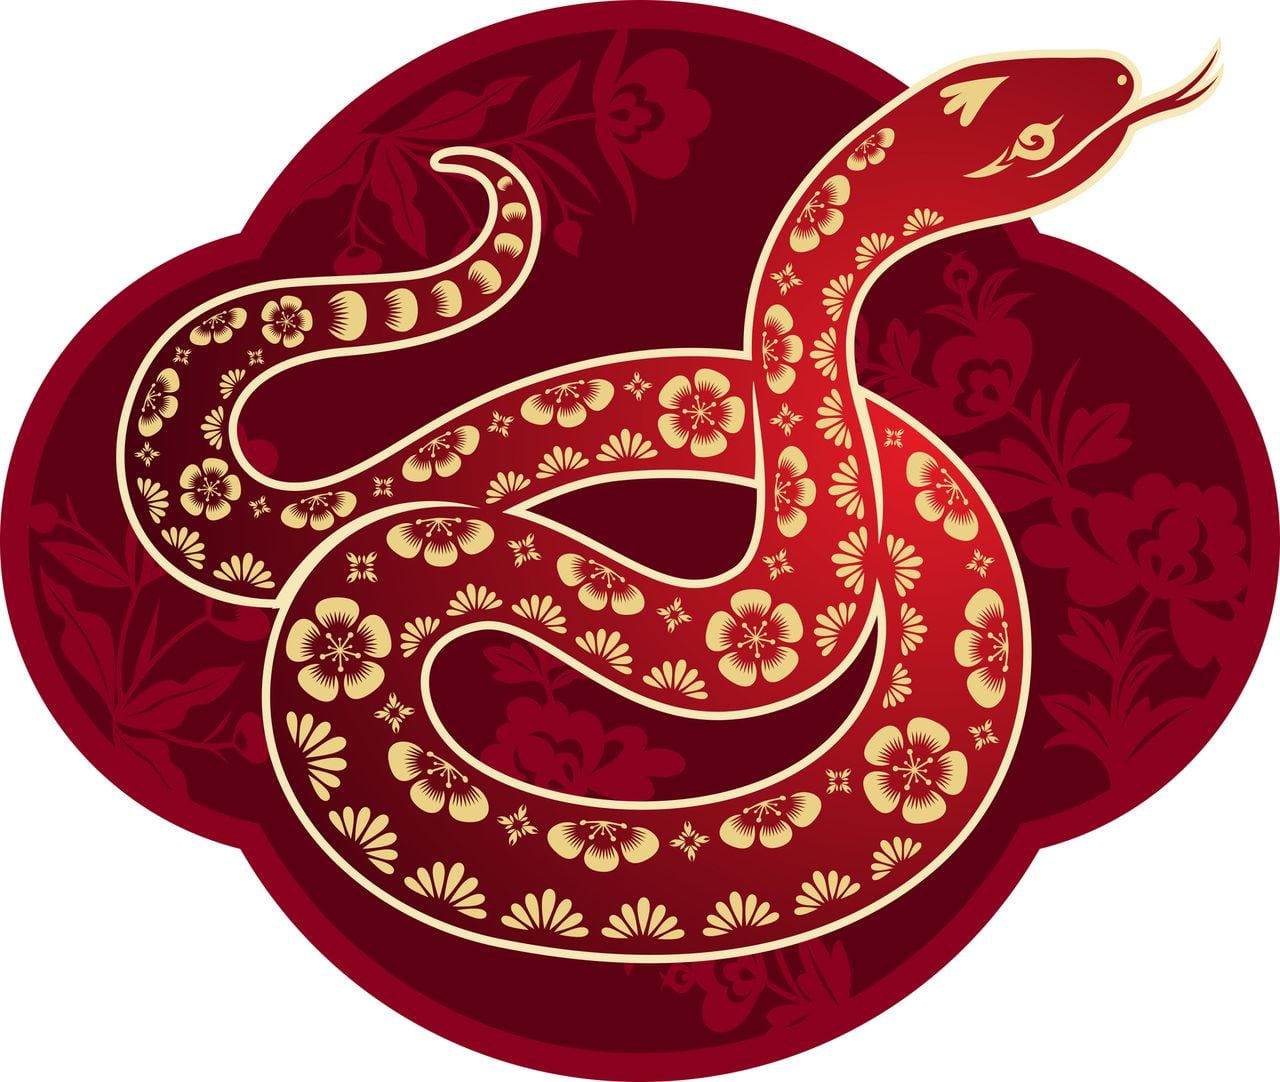 La serpiente en el horóscopo chino (Getty).